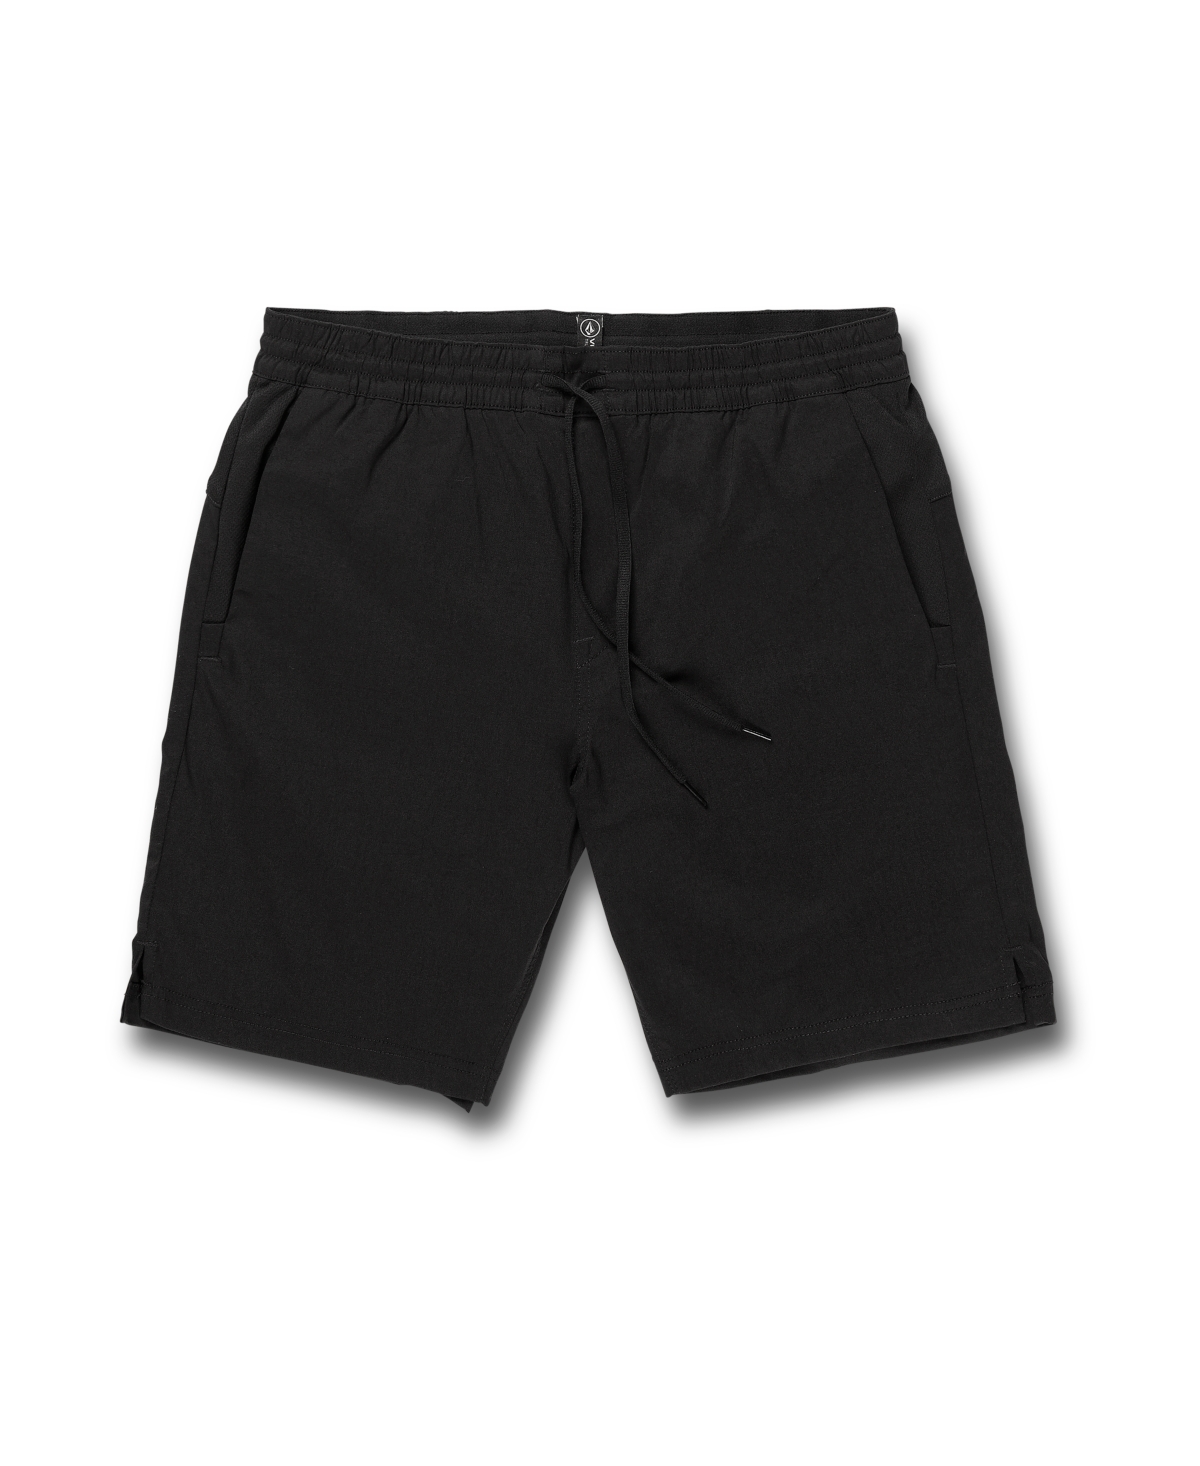 Men's Rippah Shorts - Black